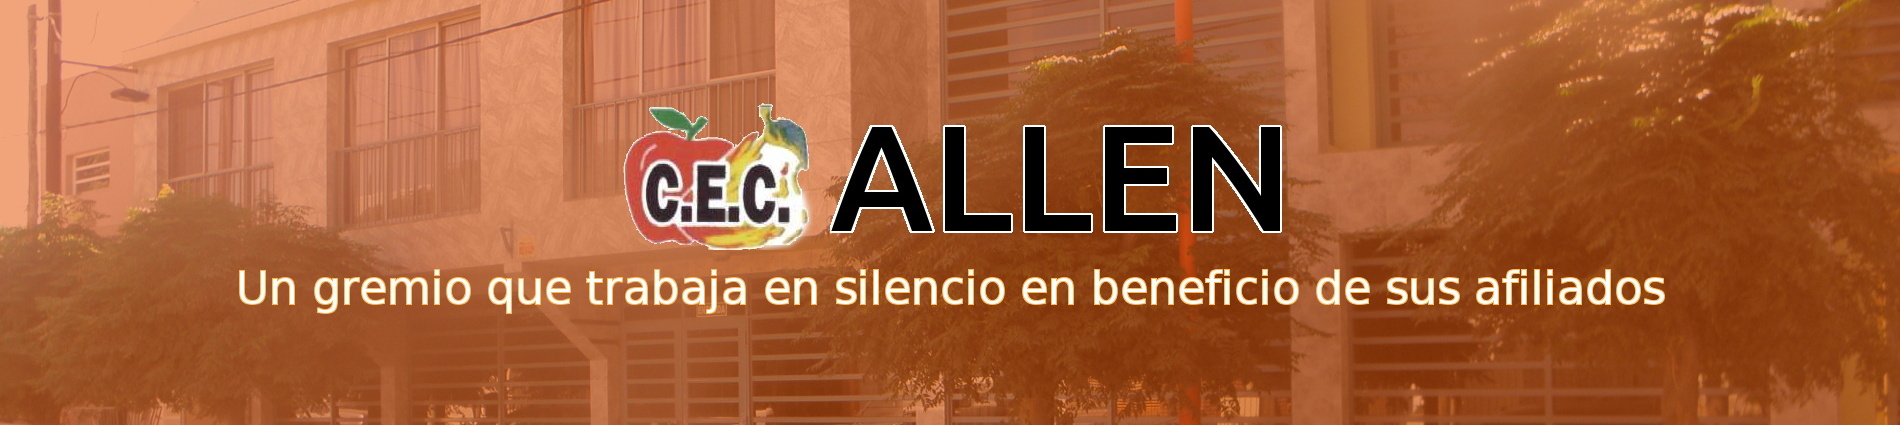 Centro de Empleados de Comercio de Allen, un gremio que trabaja en silencio en beneficio de sus afiliados